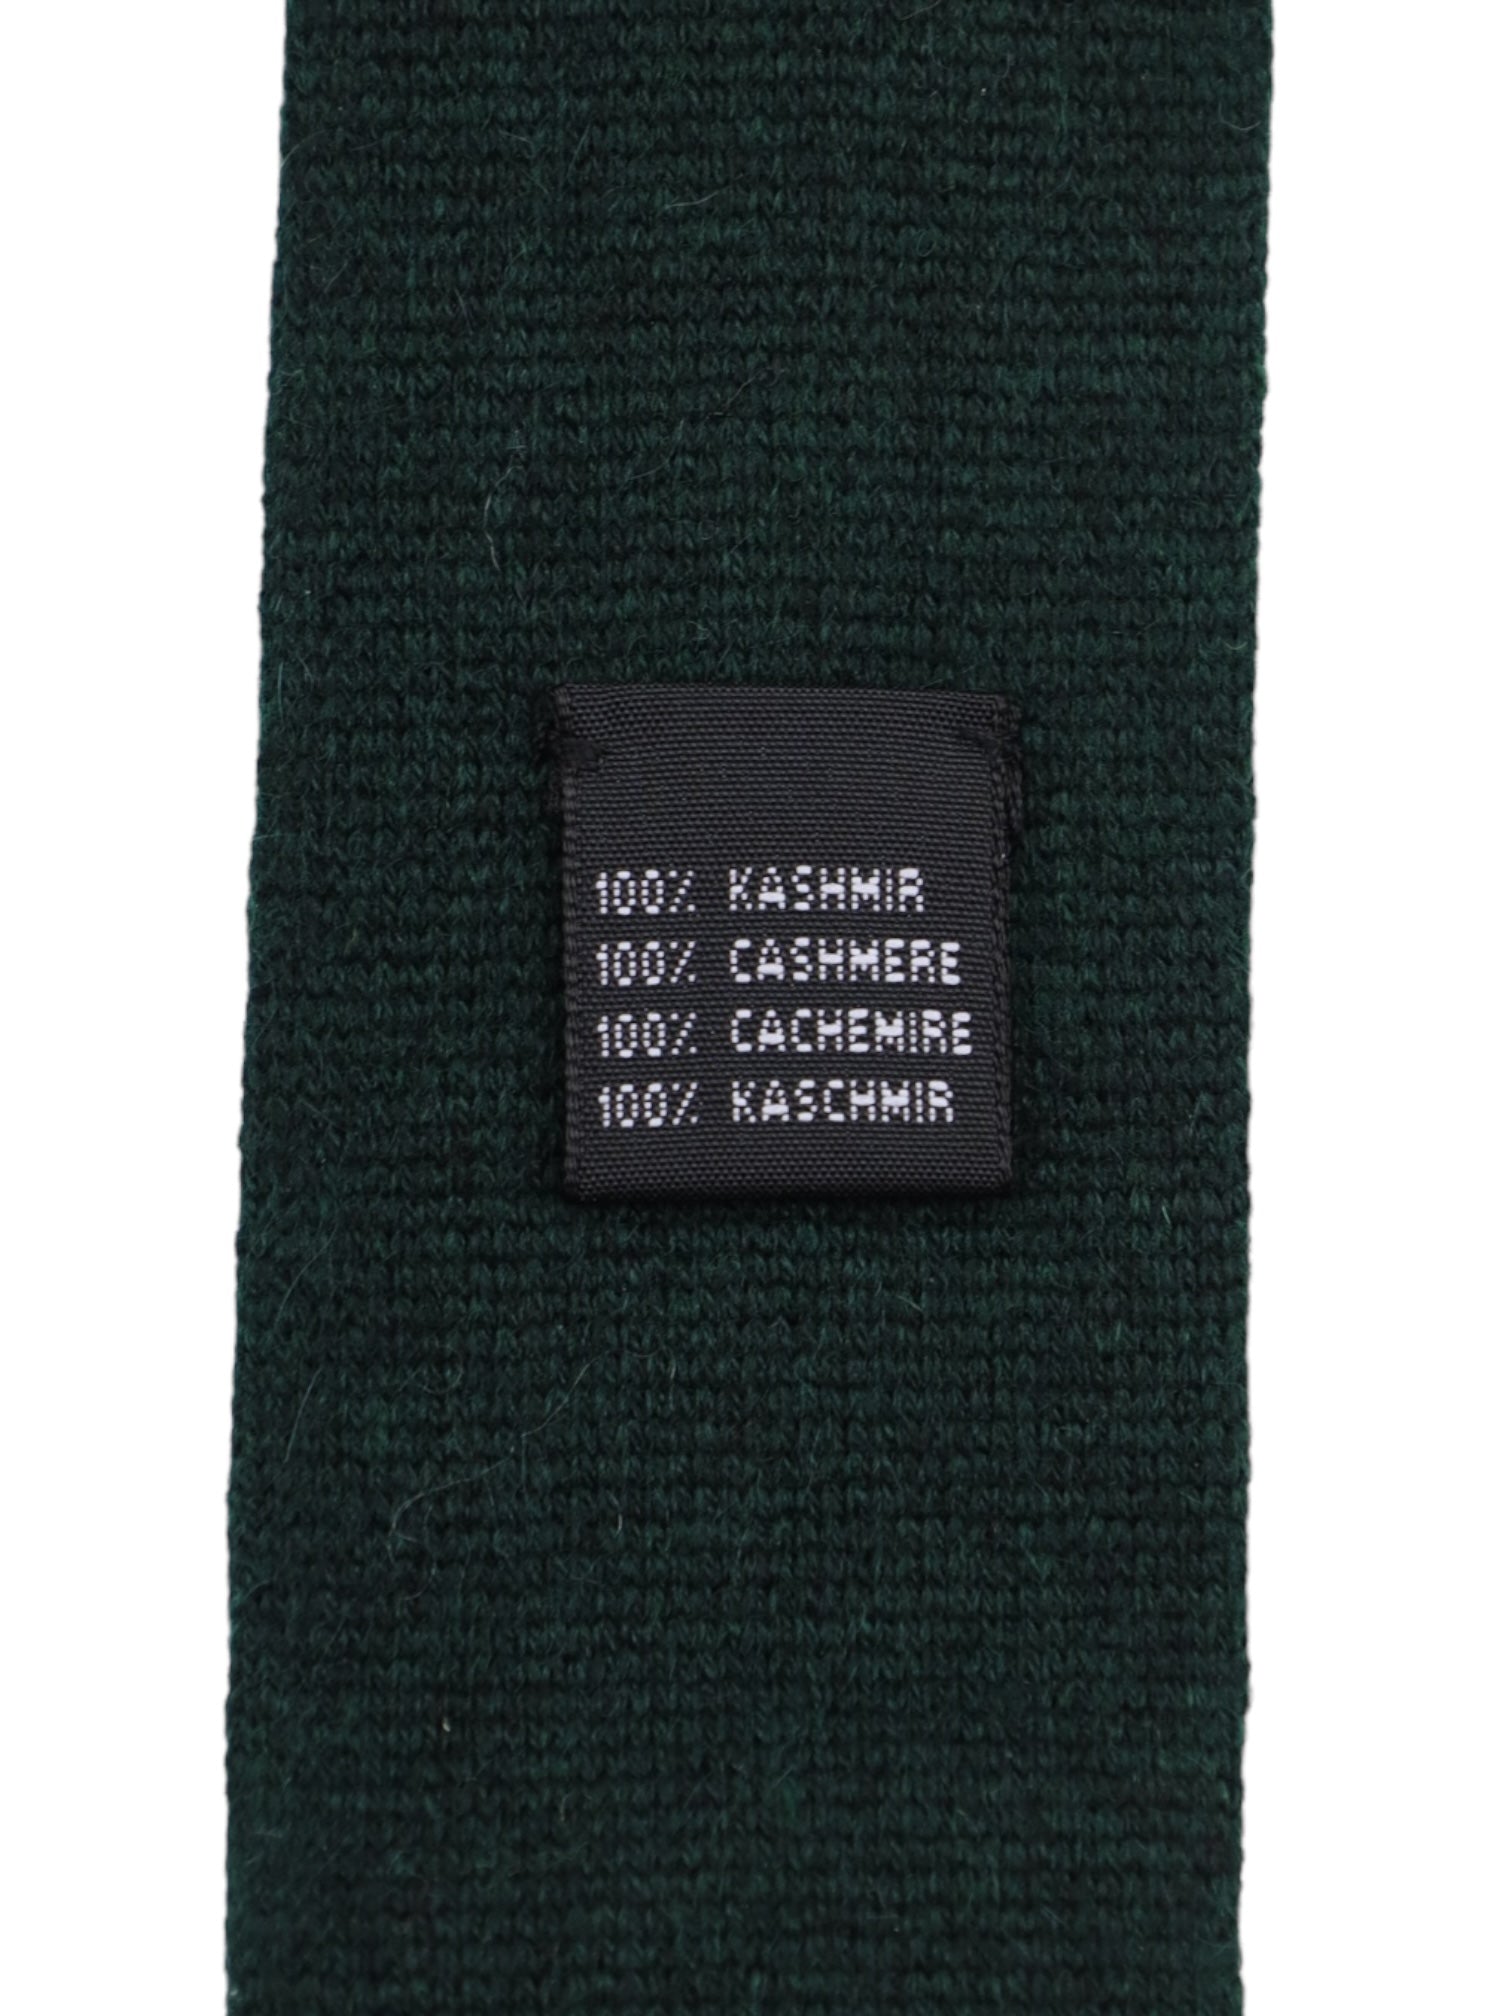 Mattabisch Forest Green Knitted Cashmere Tie